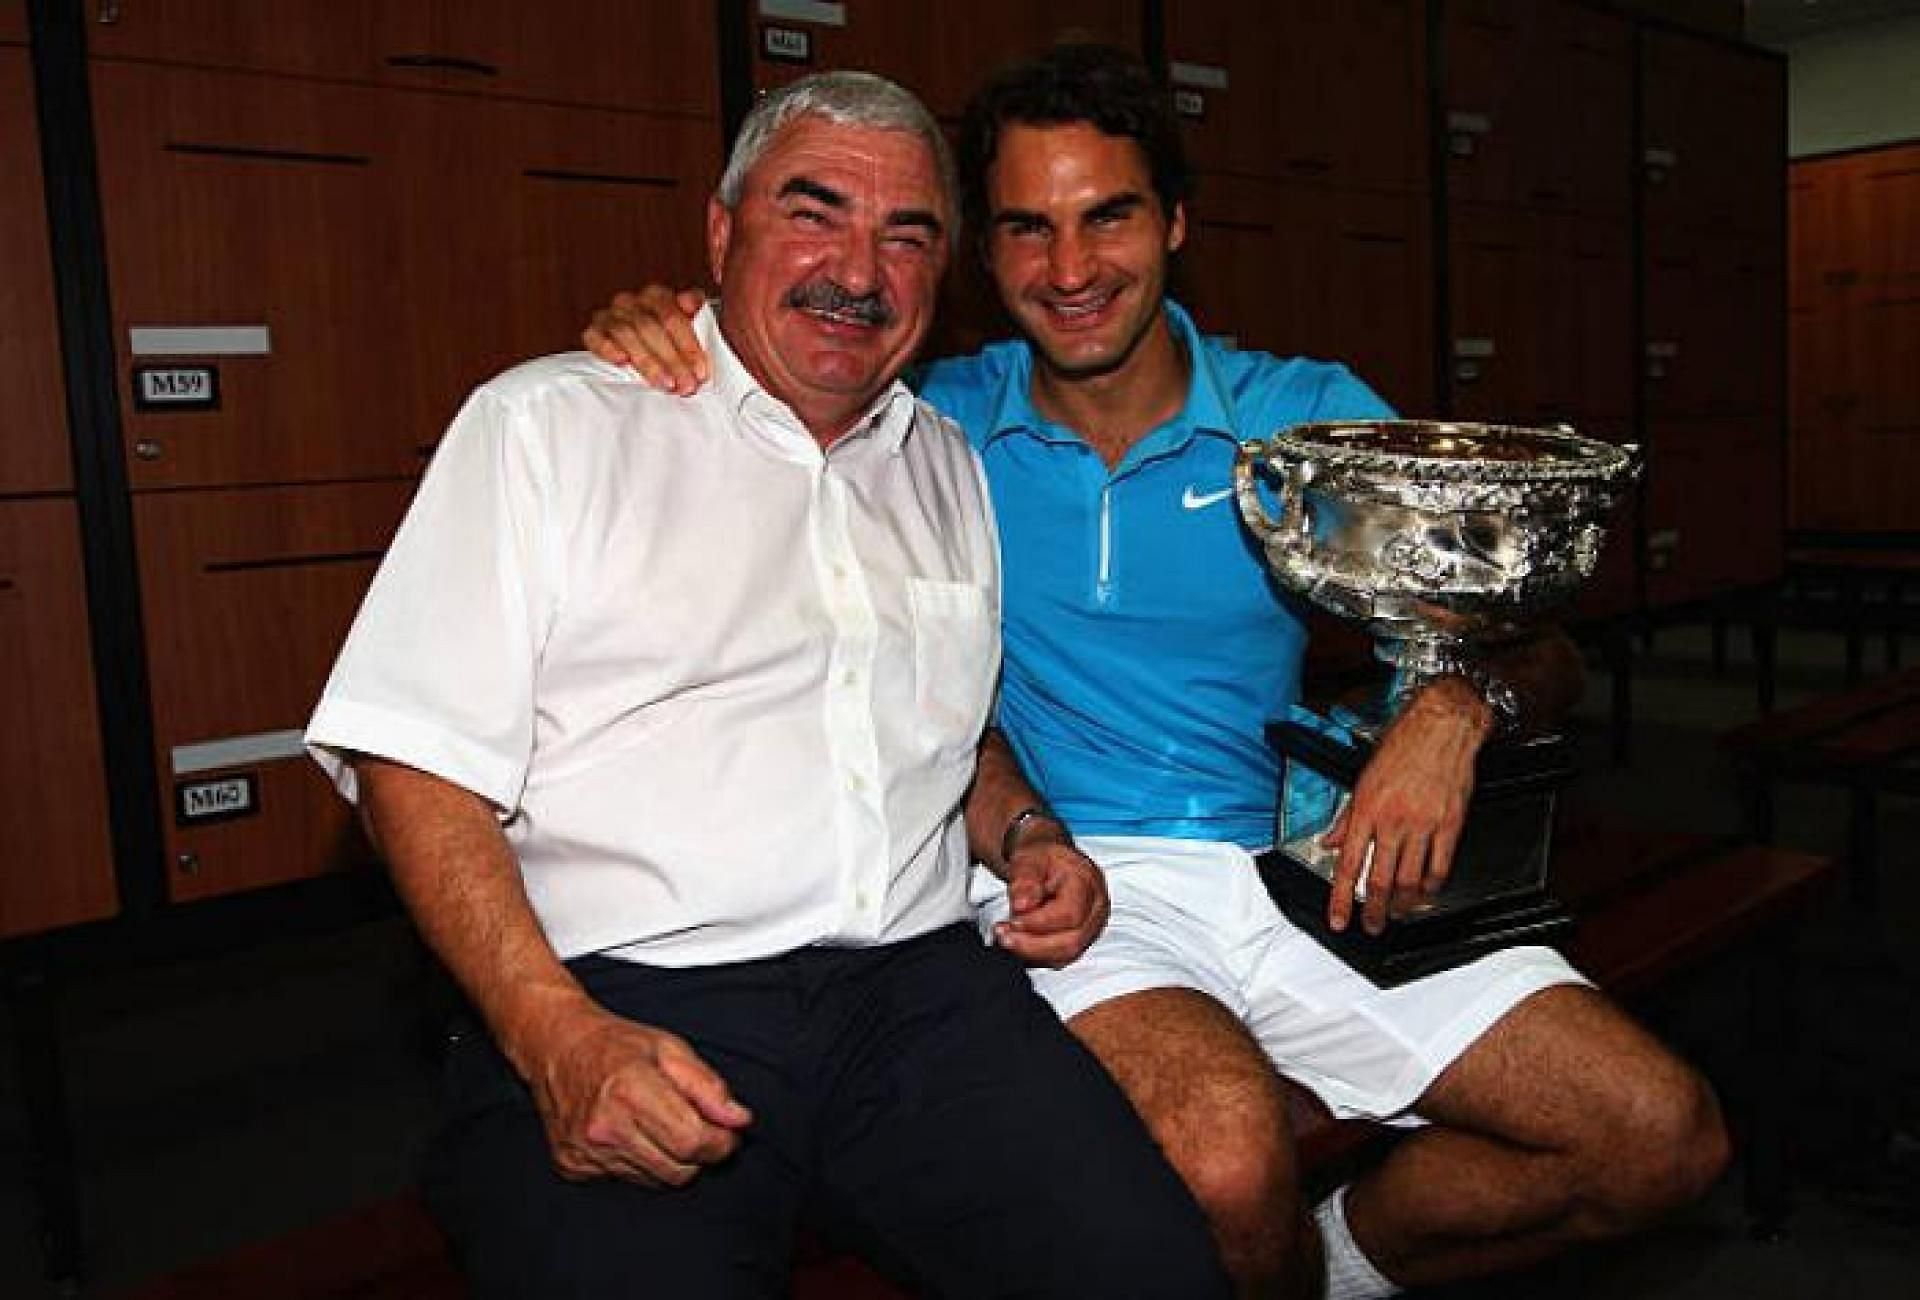 Robert Federer alongside his son Roger Federer after winning the Australian Open